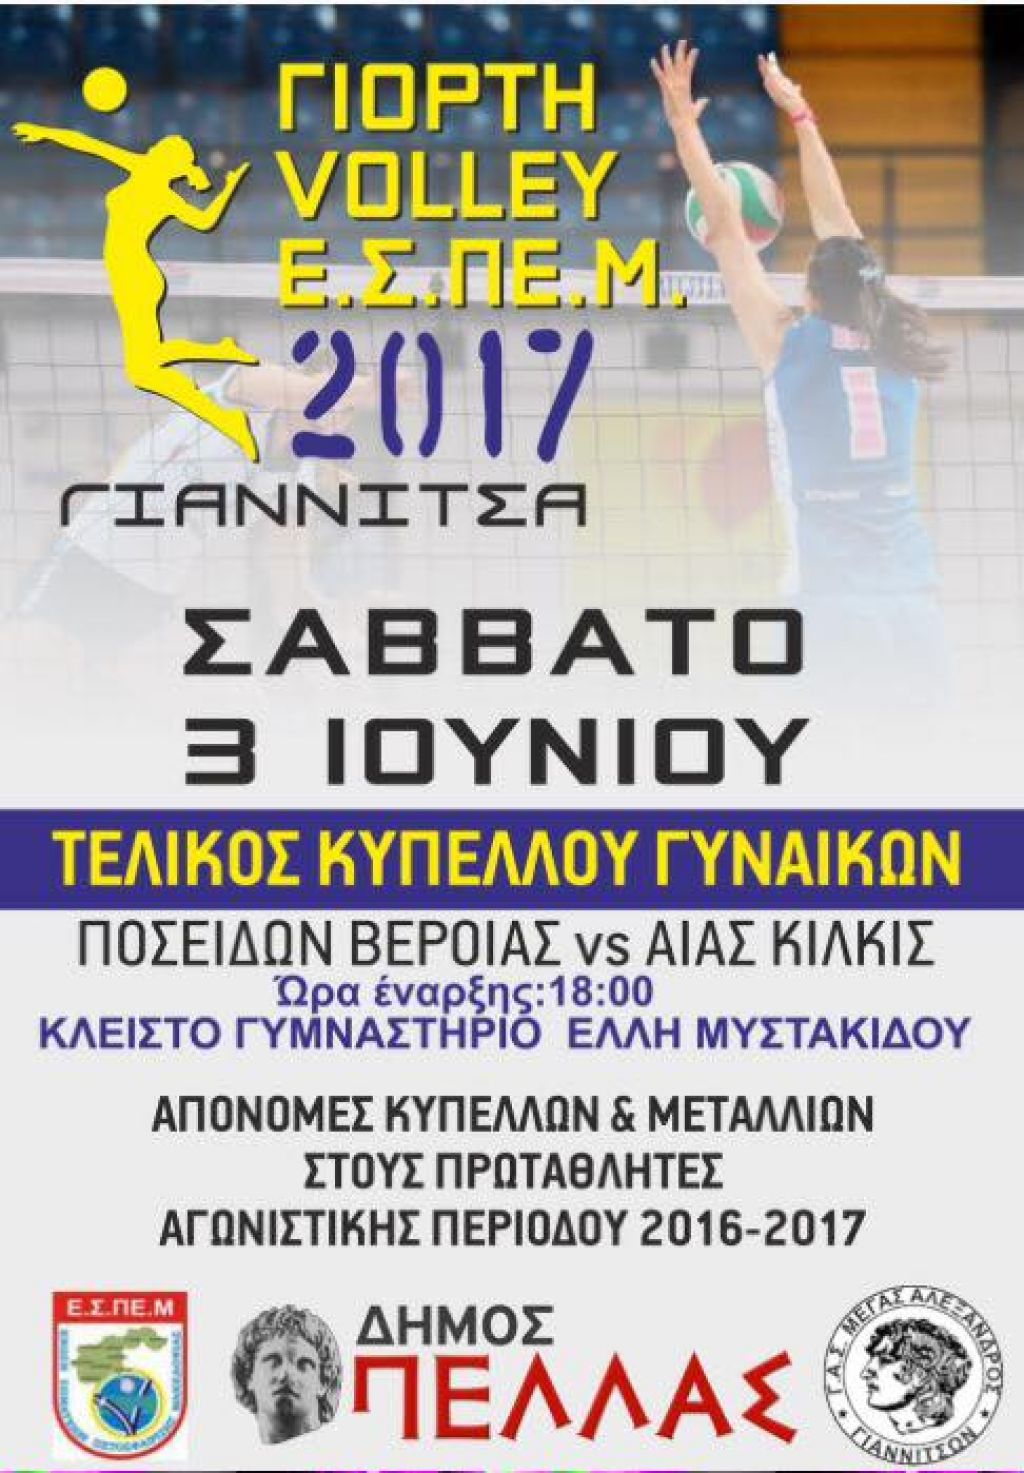 Αύριο στα Γιαννιτσά ο τελικός κυπέλλου της ΕΣΠΕΜ